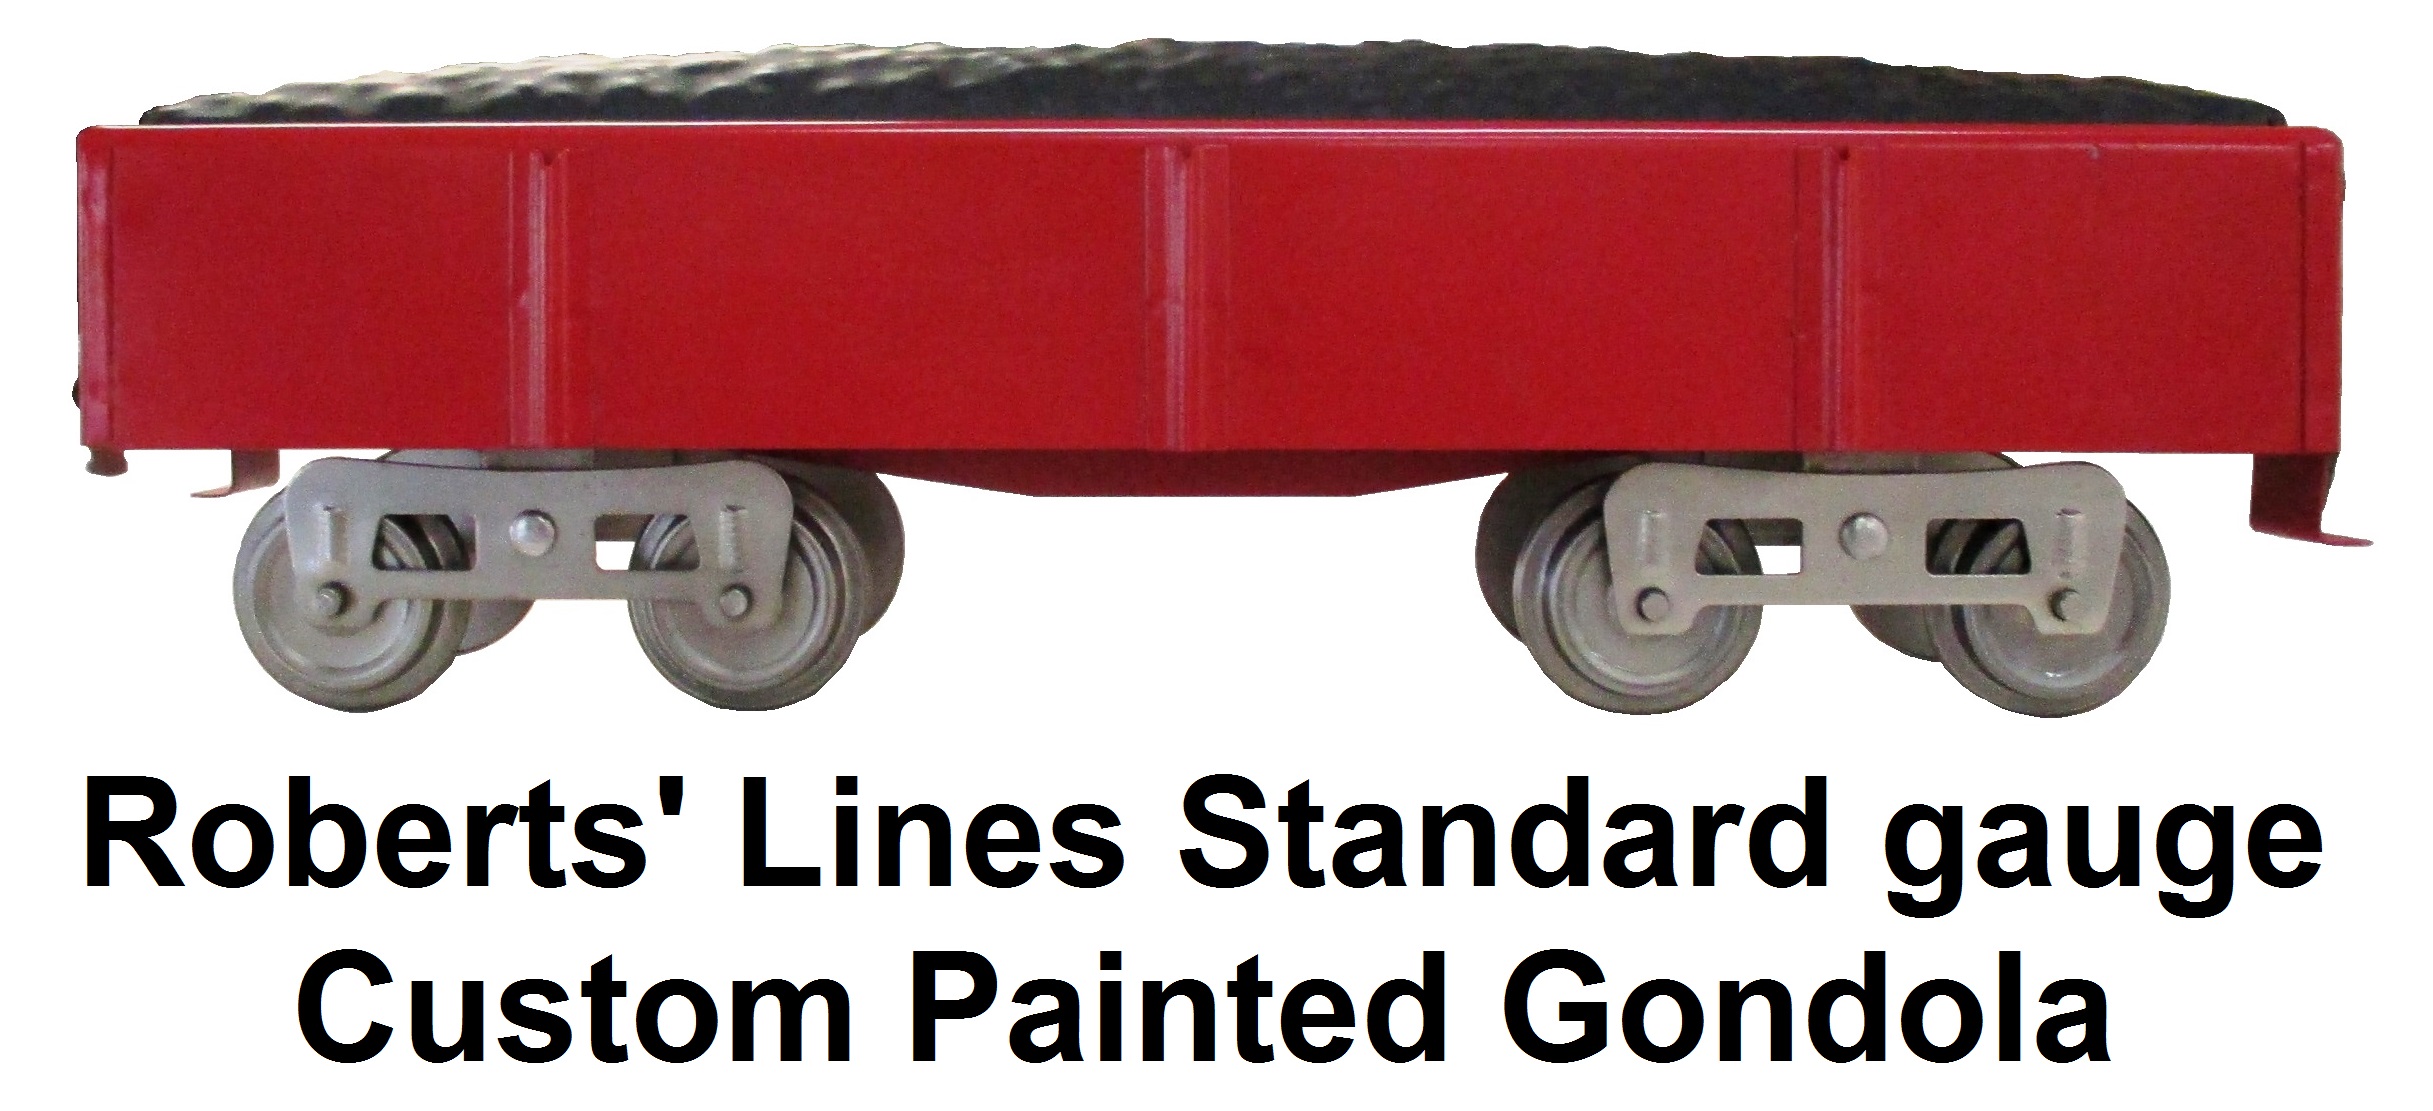 Roberts' Lines Standard gauge Custom Painted gondola